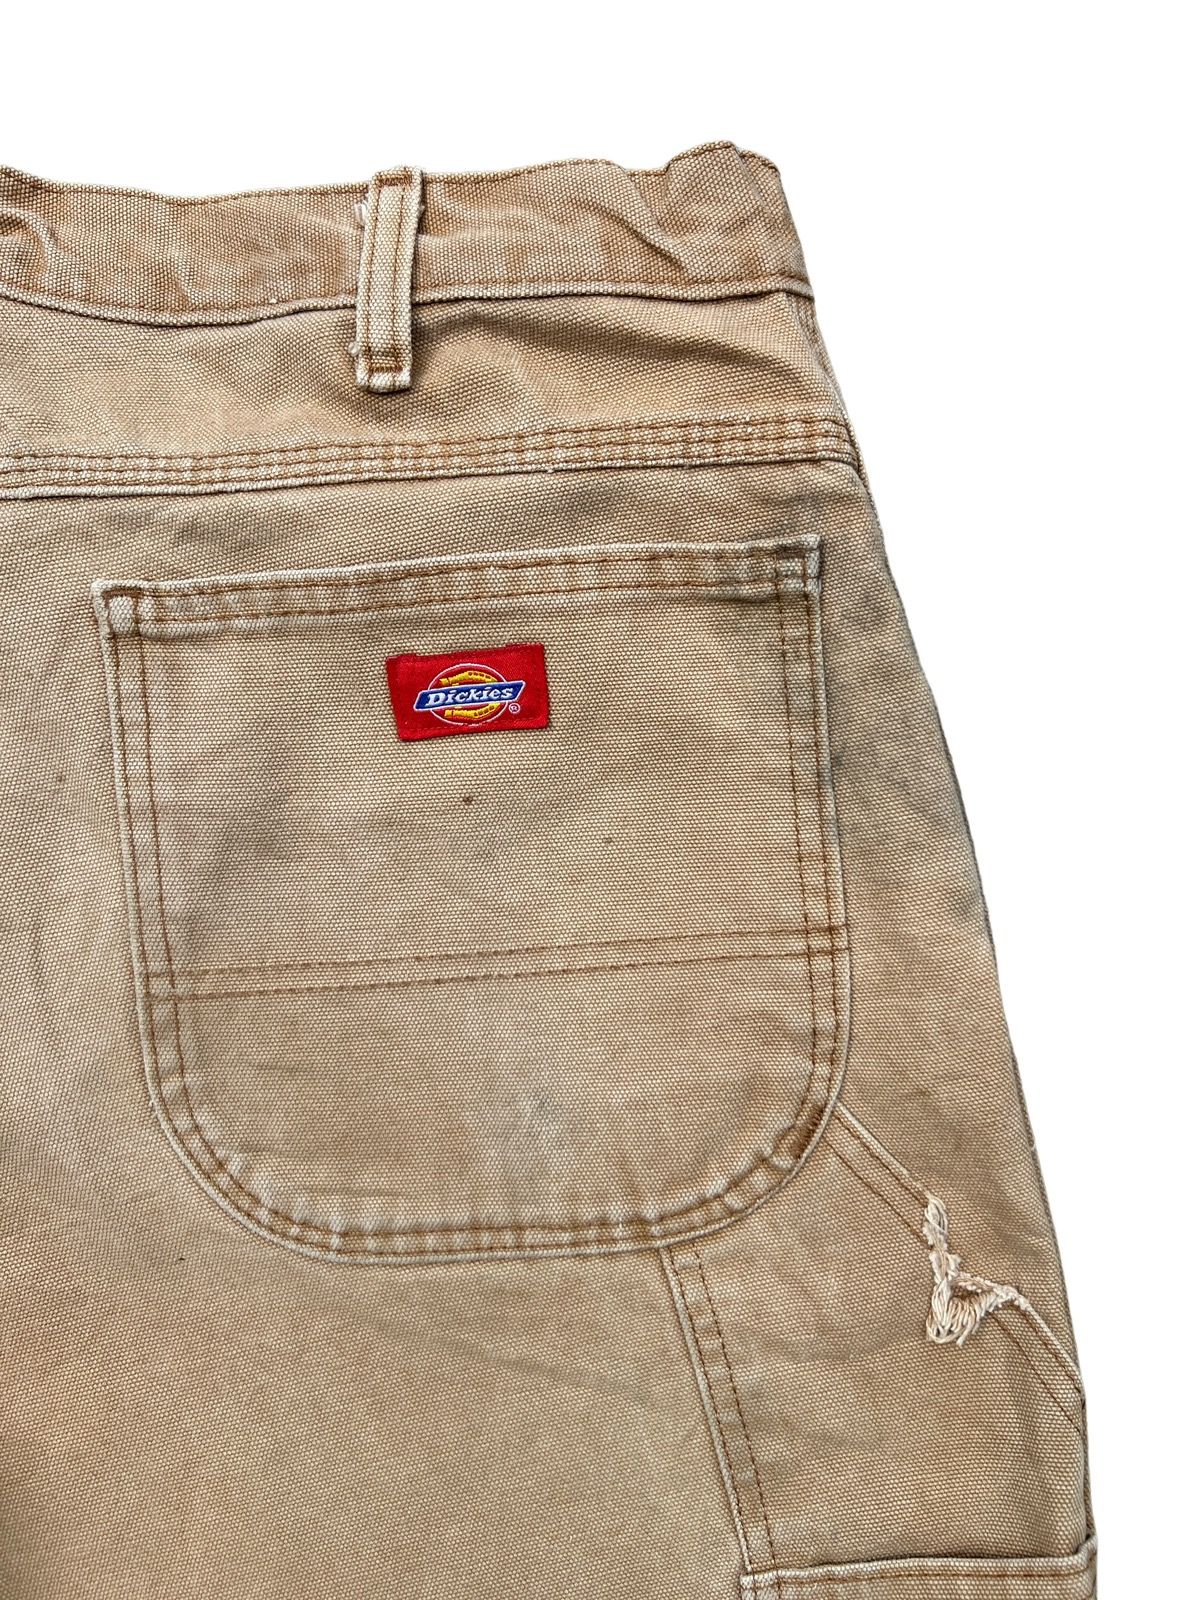 Vintage 90s Dickies Workwear Faded Distressed Baggy Pants - 13